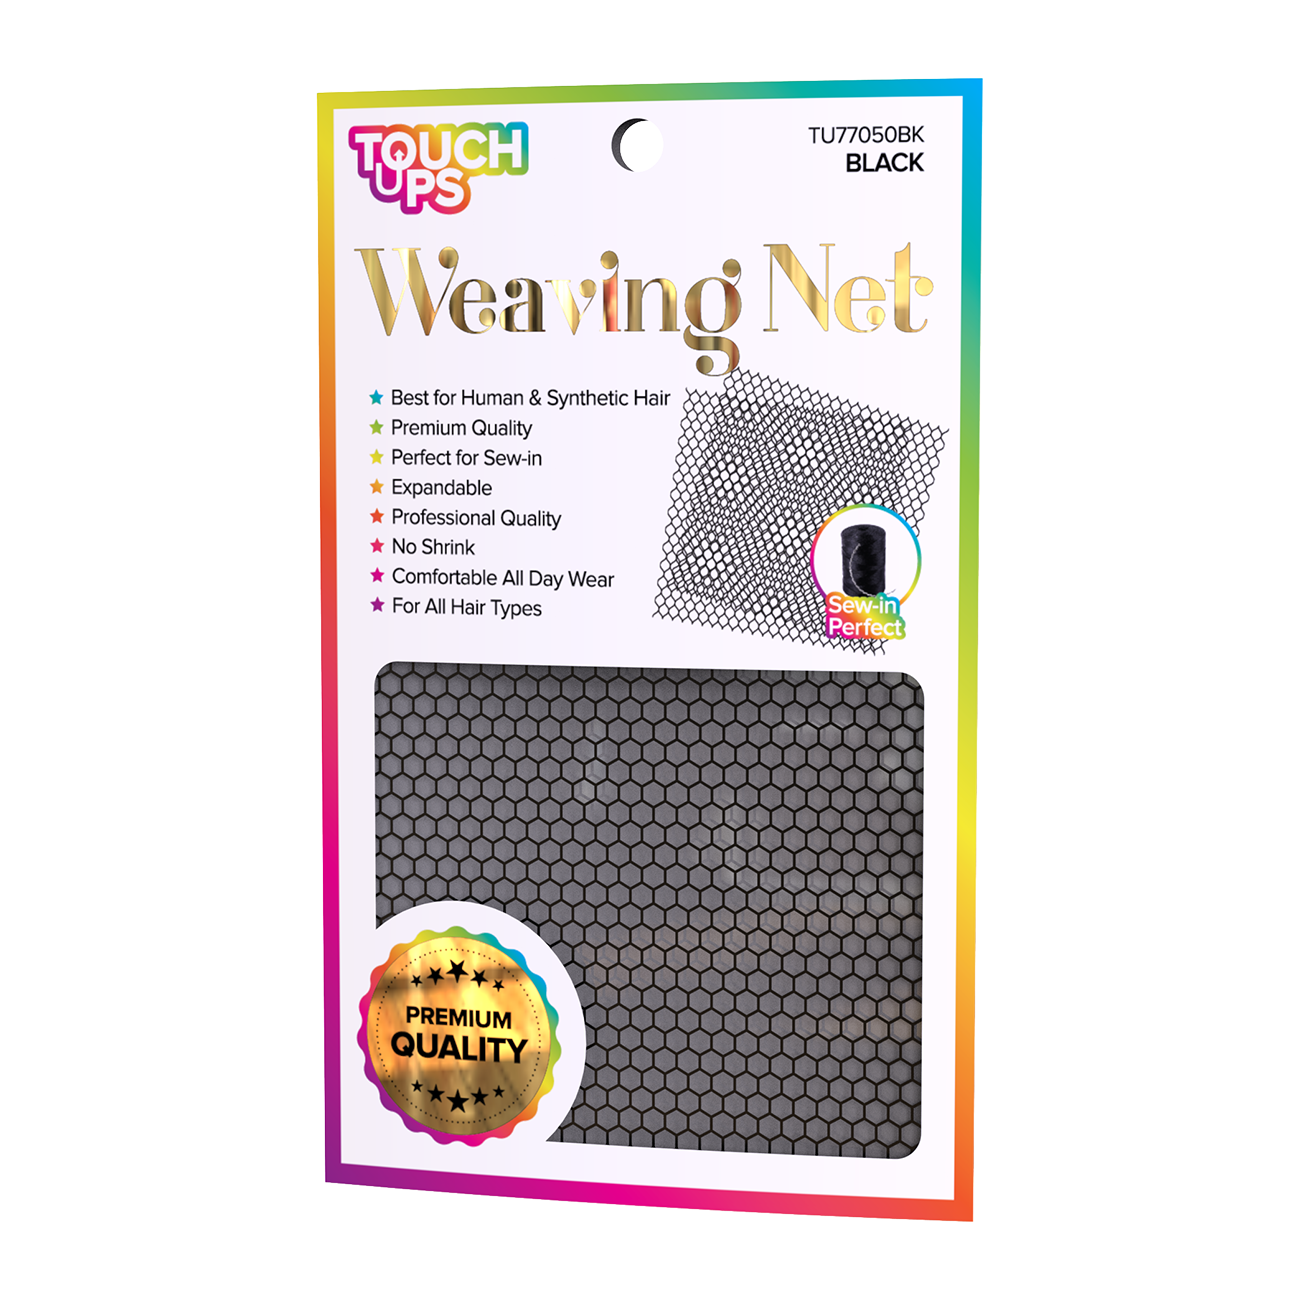 TouchUps Weaving Net